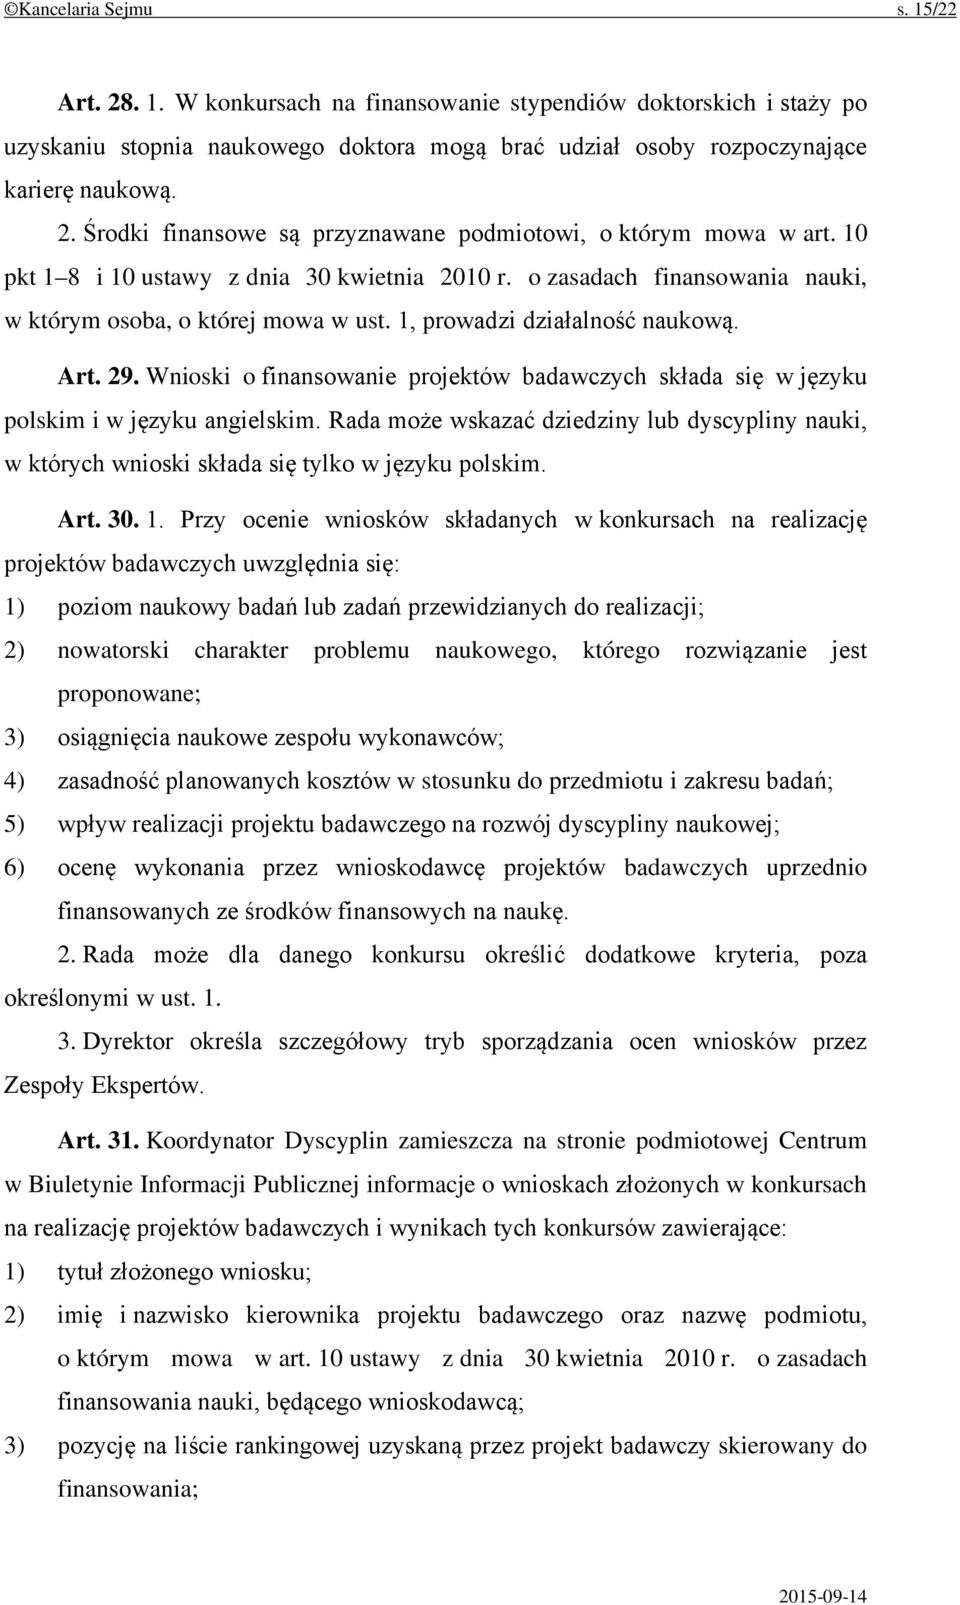 Wnioski o finansowanie projektów badawczych składa się w języku polskim i w języku angielskim. Rada może wskazać dziedziny lub dyscypliny nauki, w których wnioski składa się tylko w języku polskim.